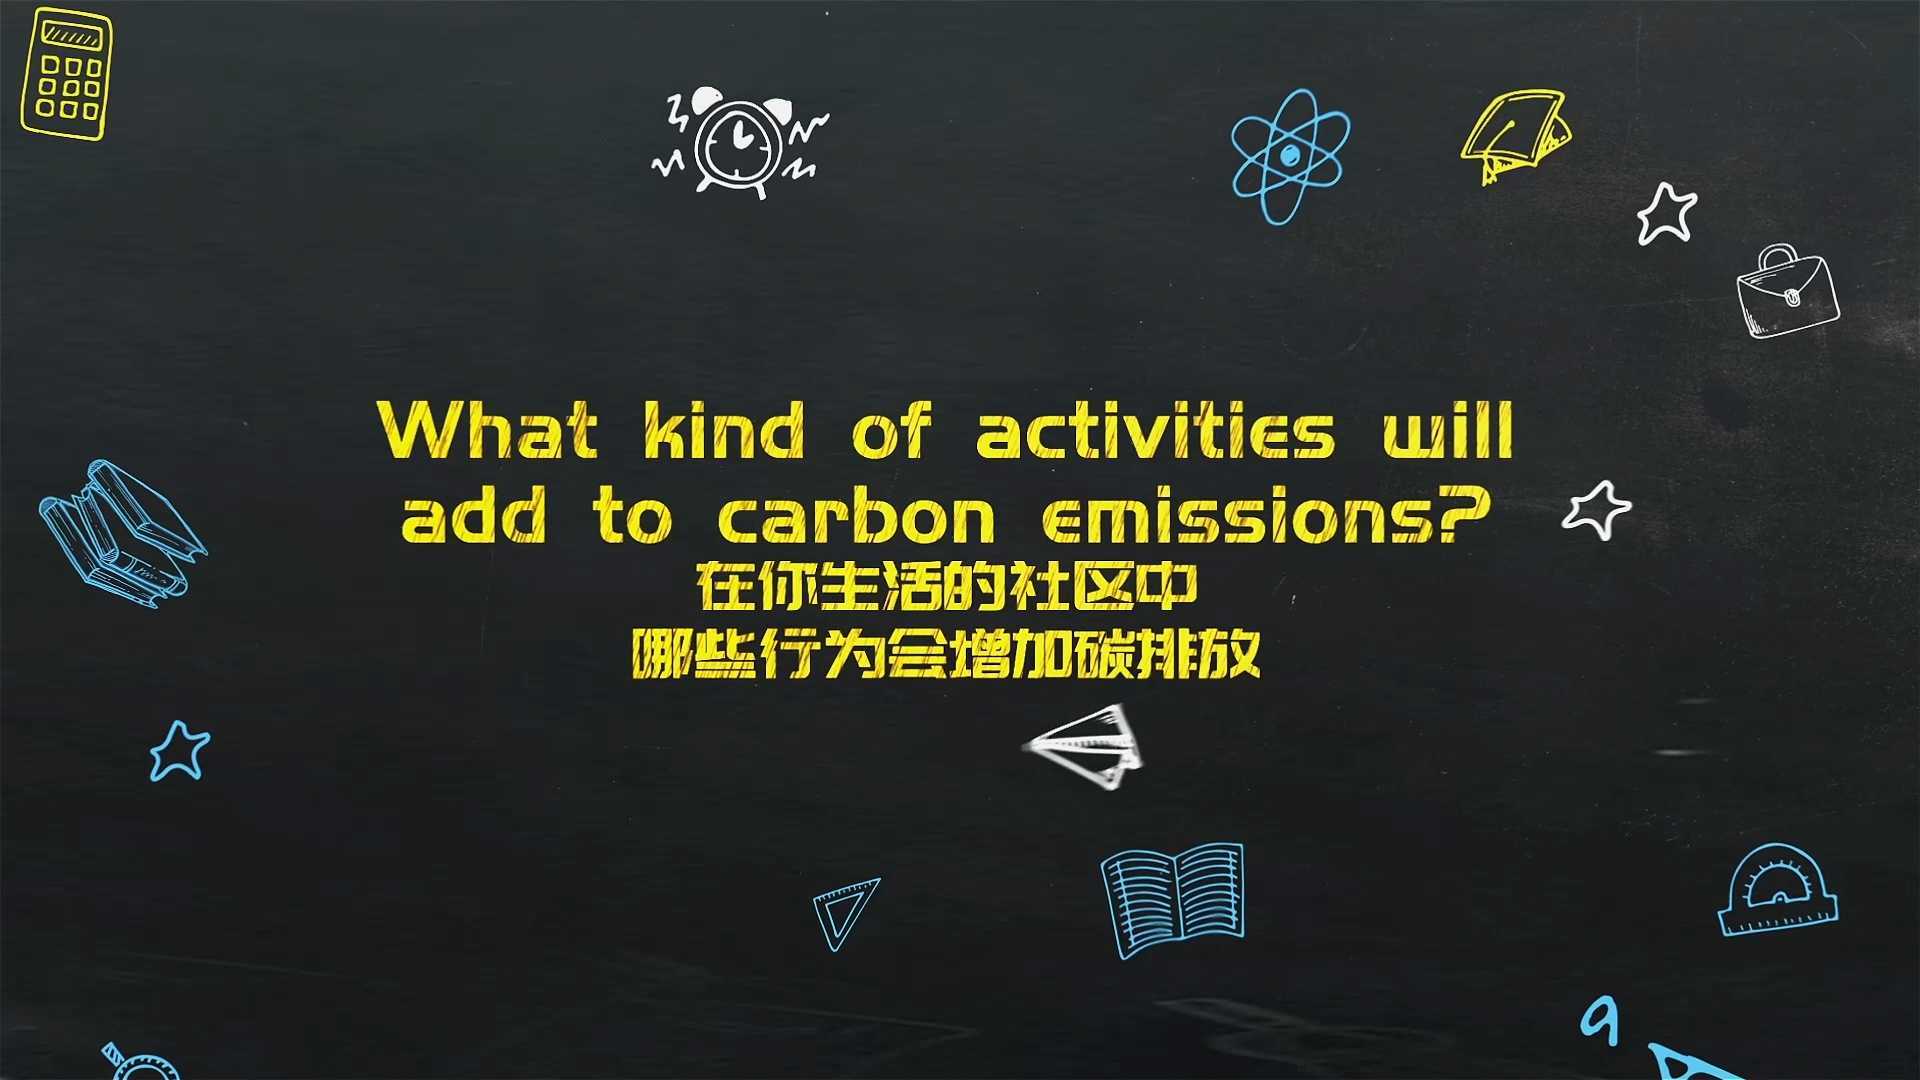 《近零碳 我们都是参与者》